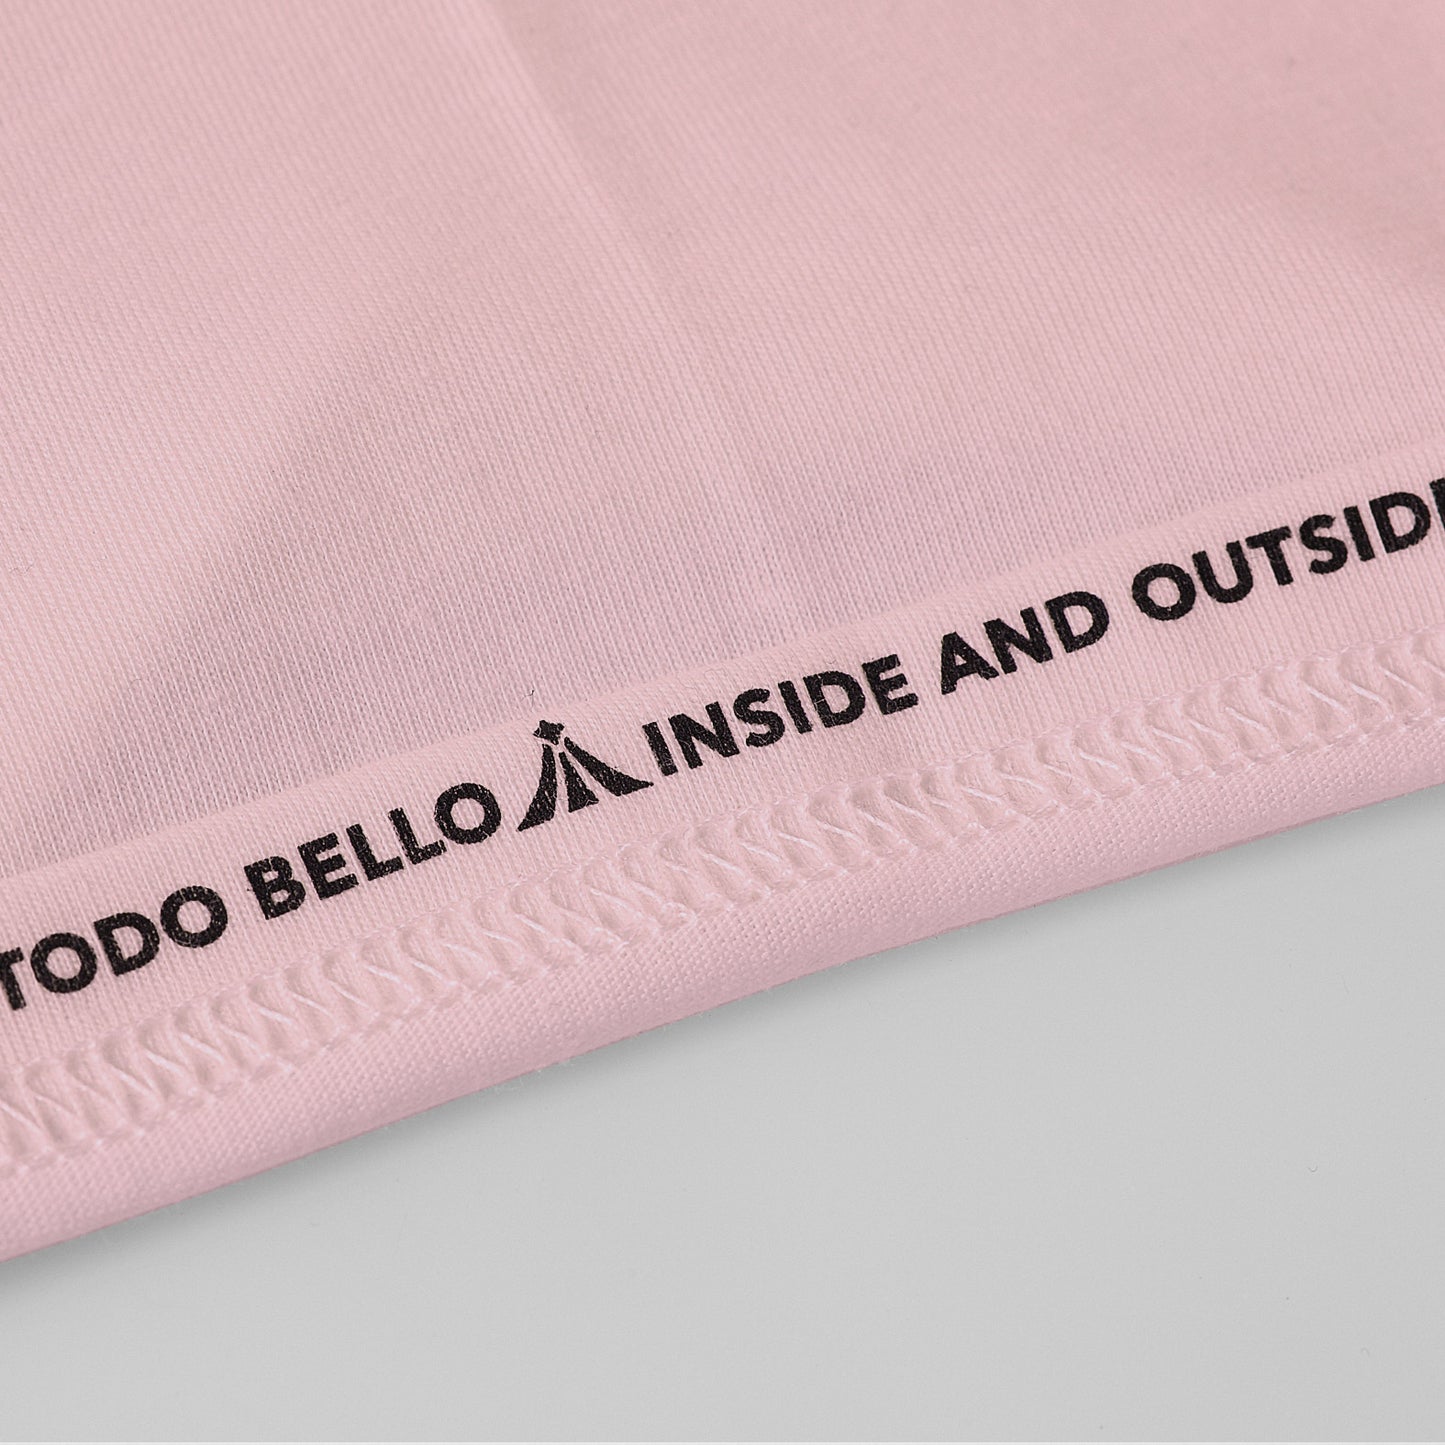 soy-latin-lover-camiseta-hombre-mujer-basica-rosado-baby.jpg